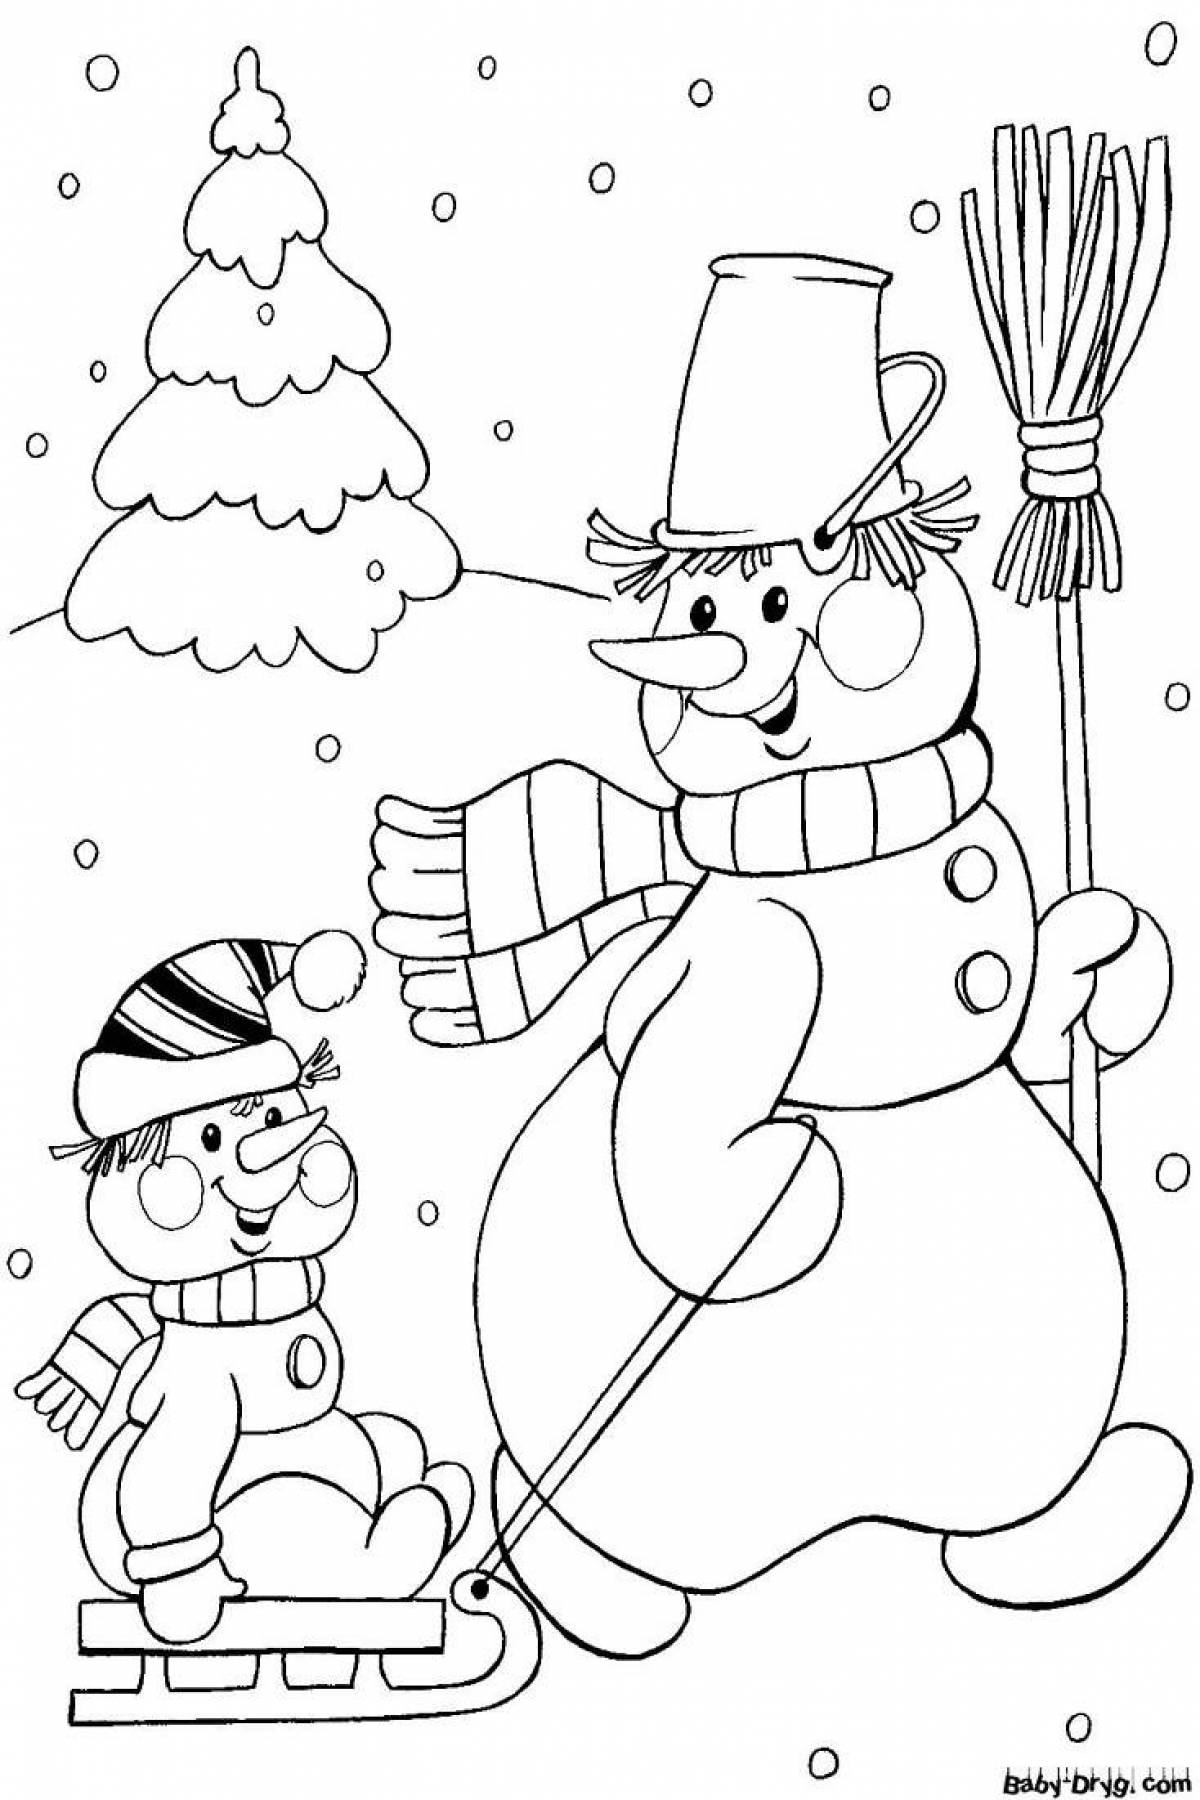 Волшебная раскраска снеговик для детей